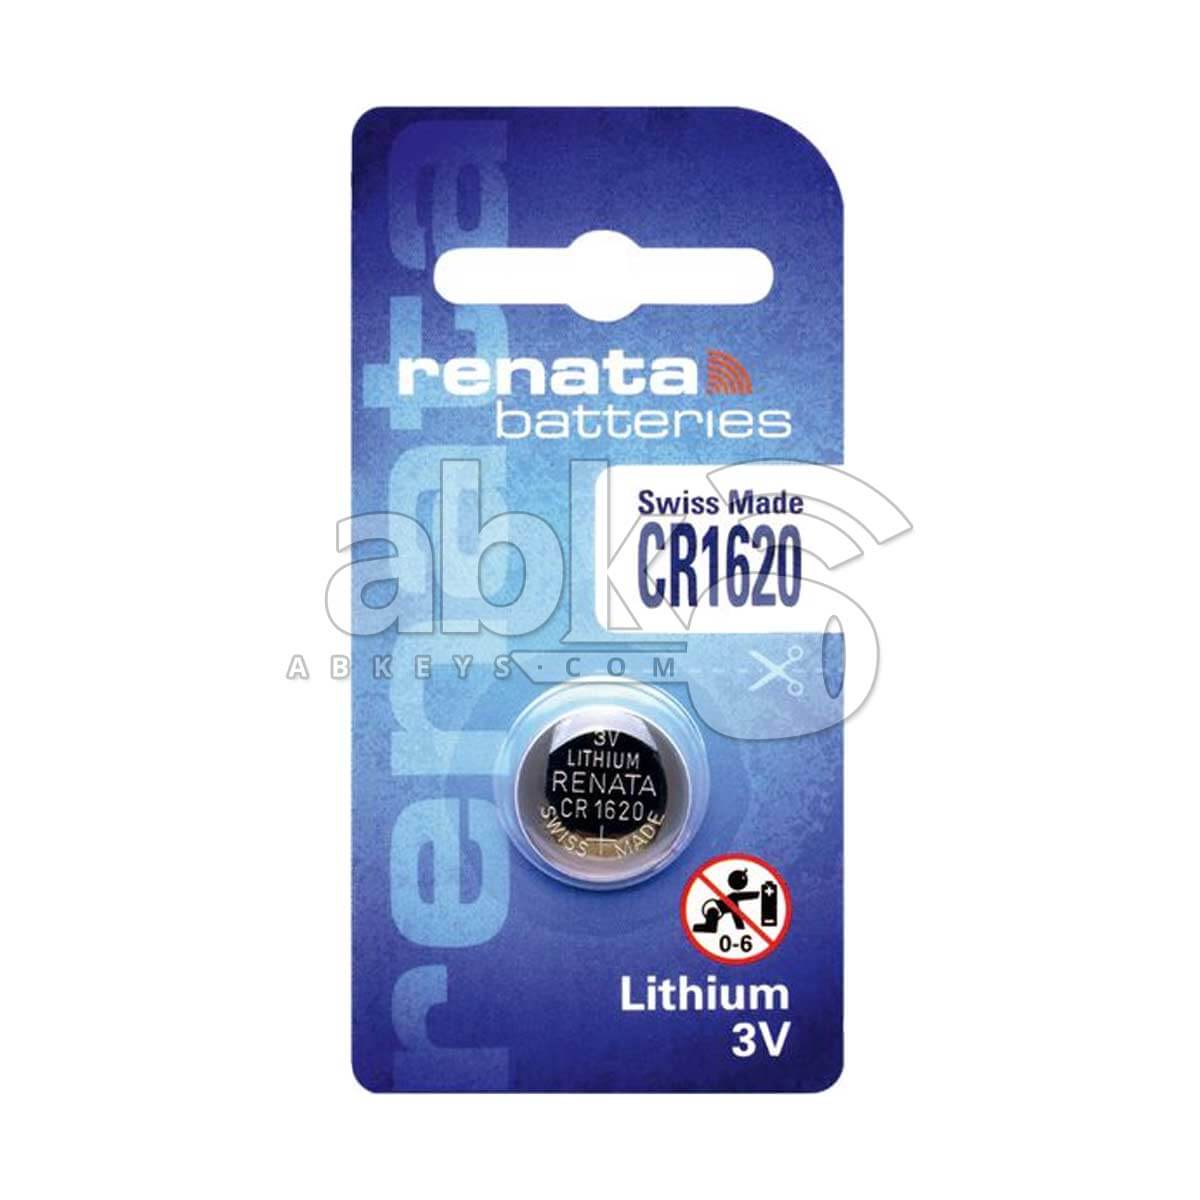 Buy CR1620 3v Lithium Batteries